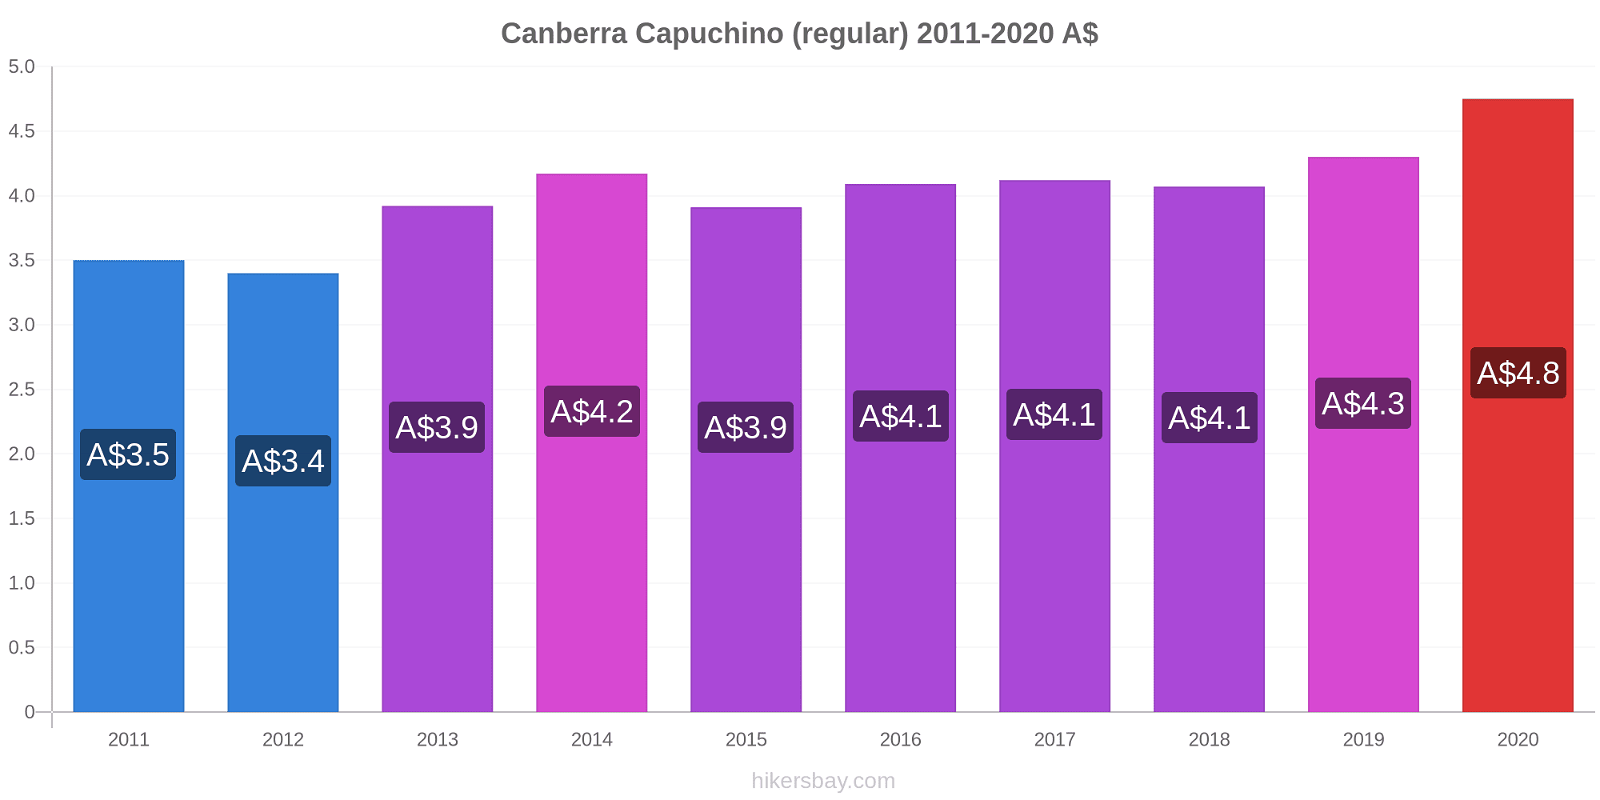 Canberra cambios de precios Capuchino (regular) hikersbay.com